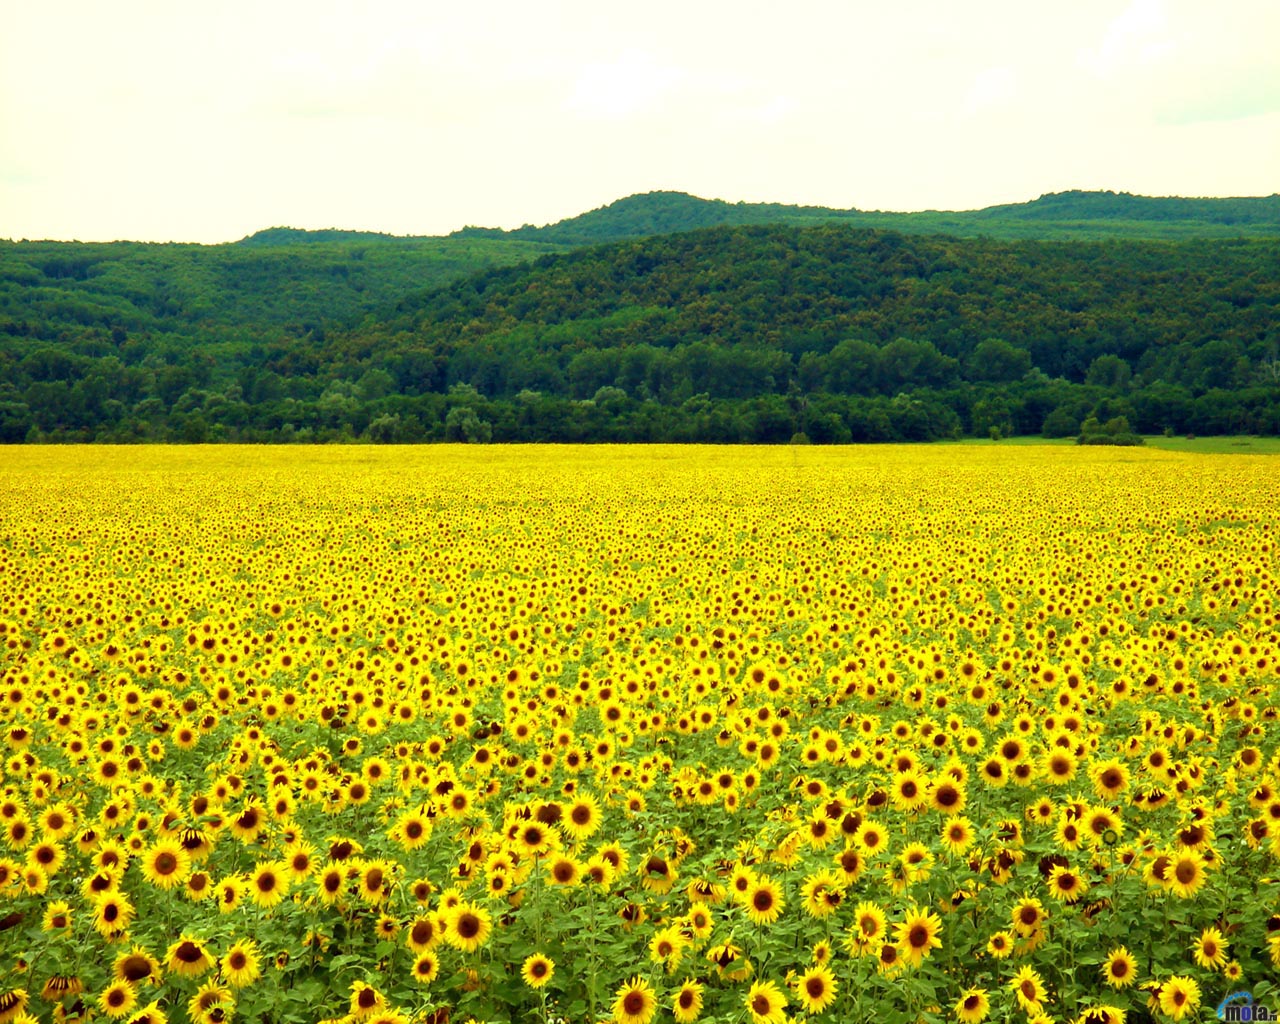 Wallpaper Yellow Sunflower Field